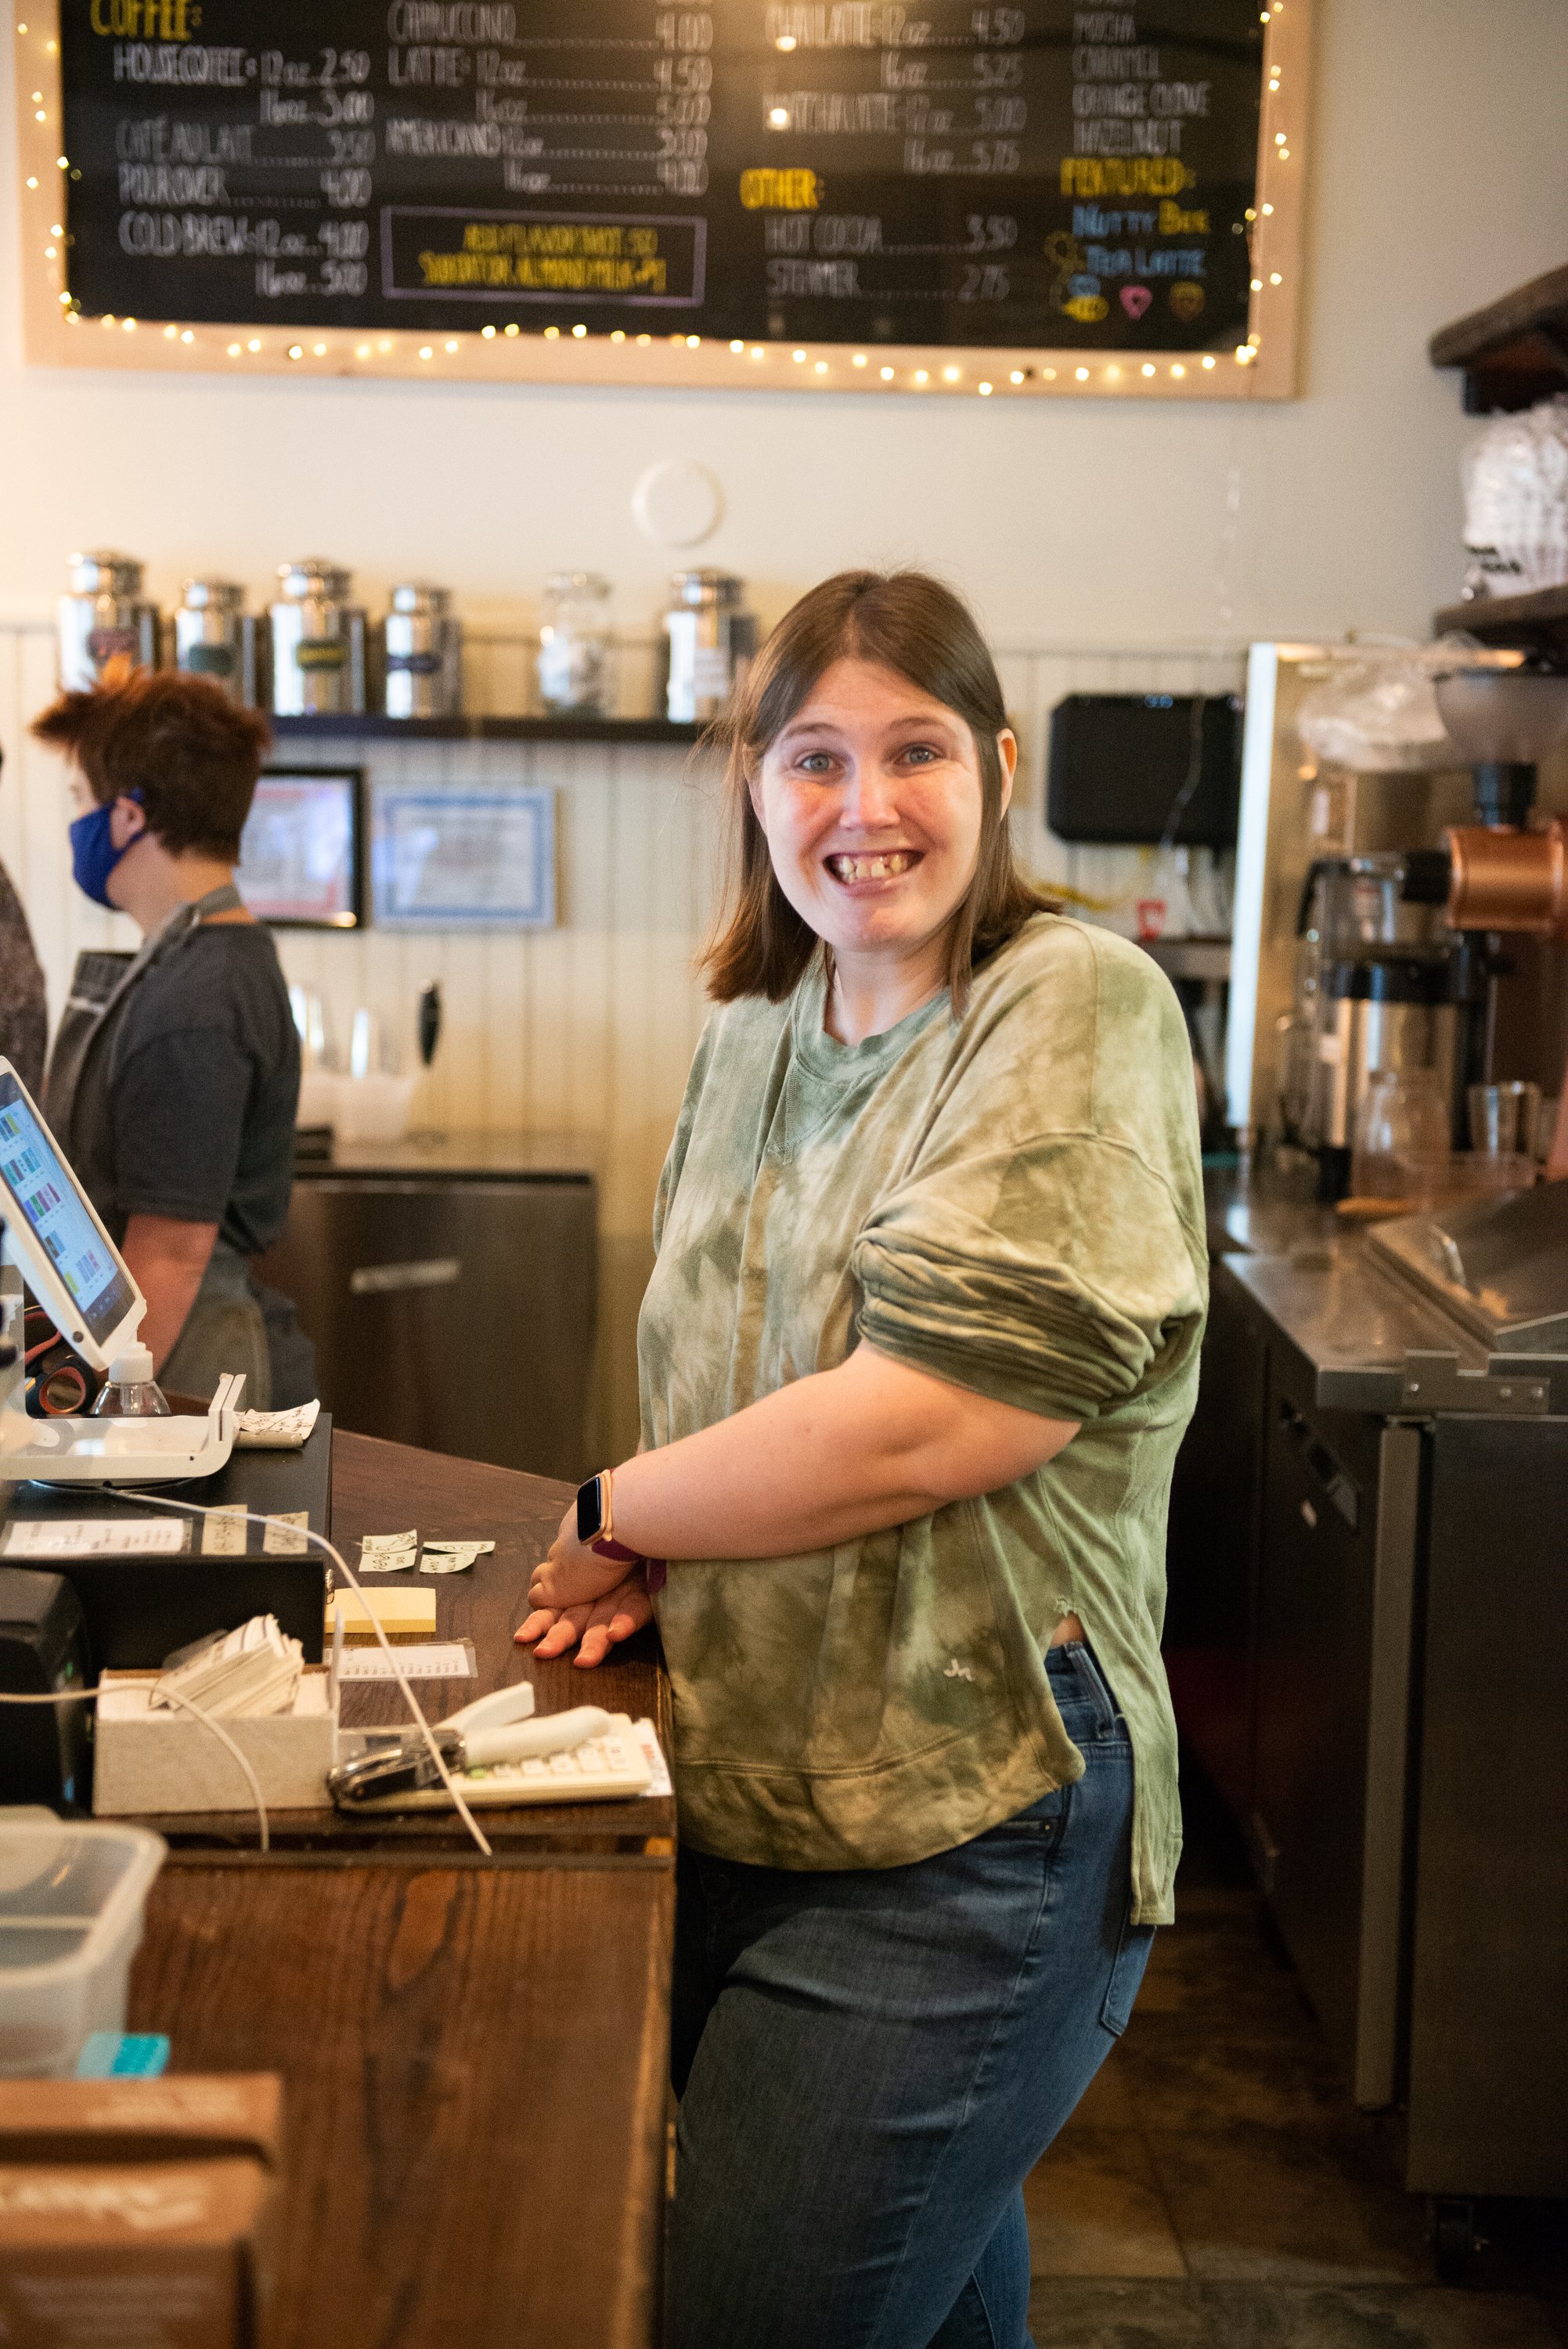 Helen K-R working as a cashier at Soltane Café.